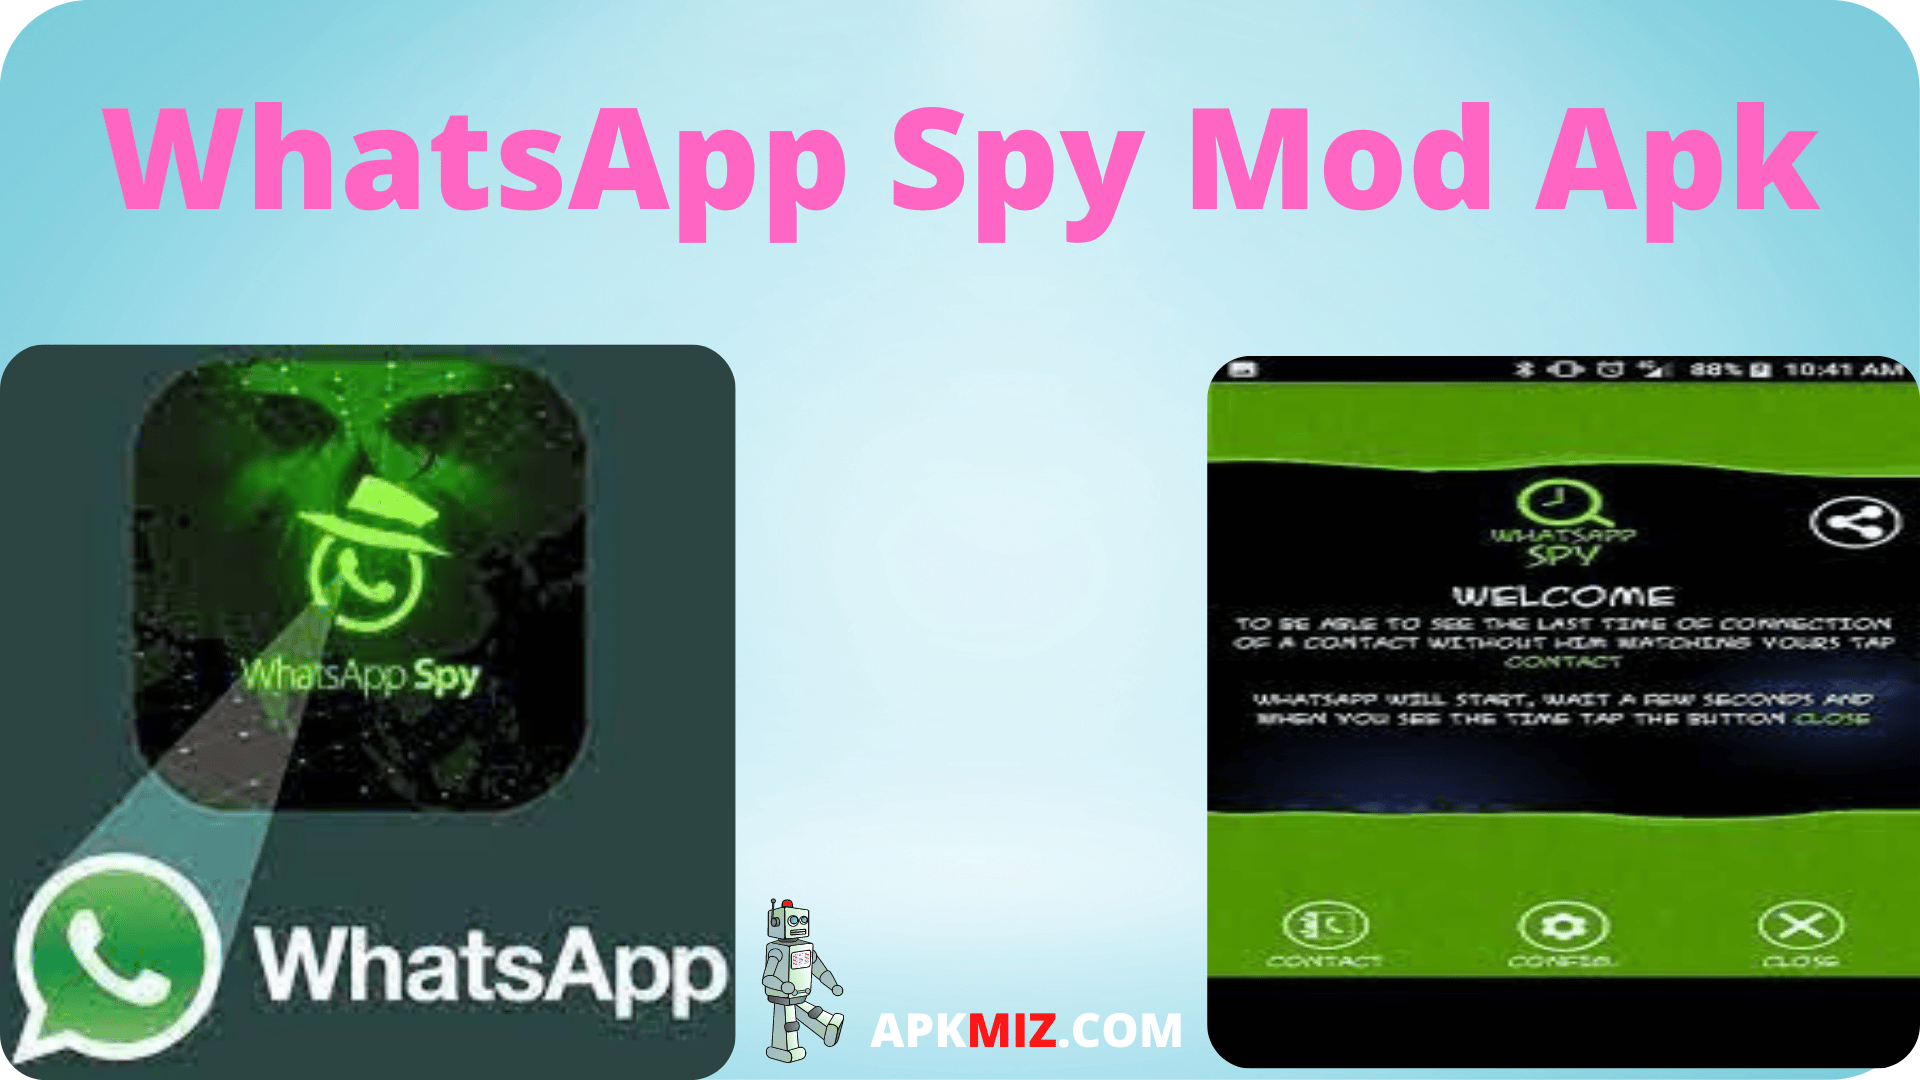 WhatsApp Spy Mod Apk